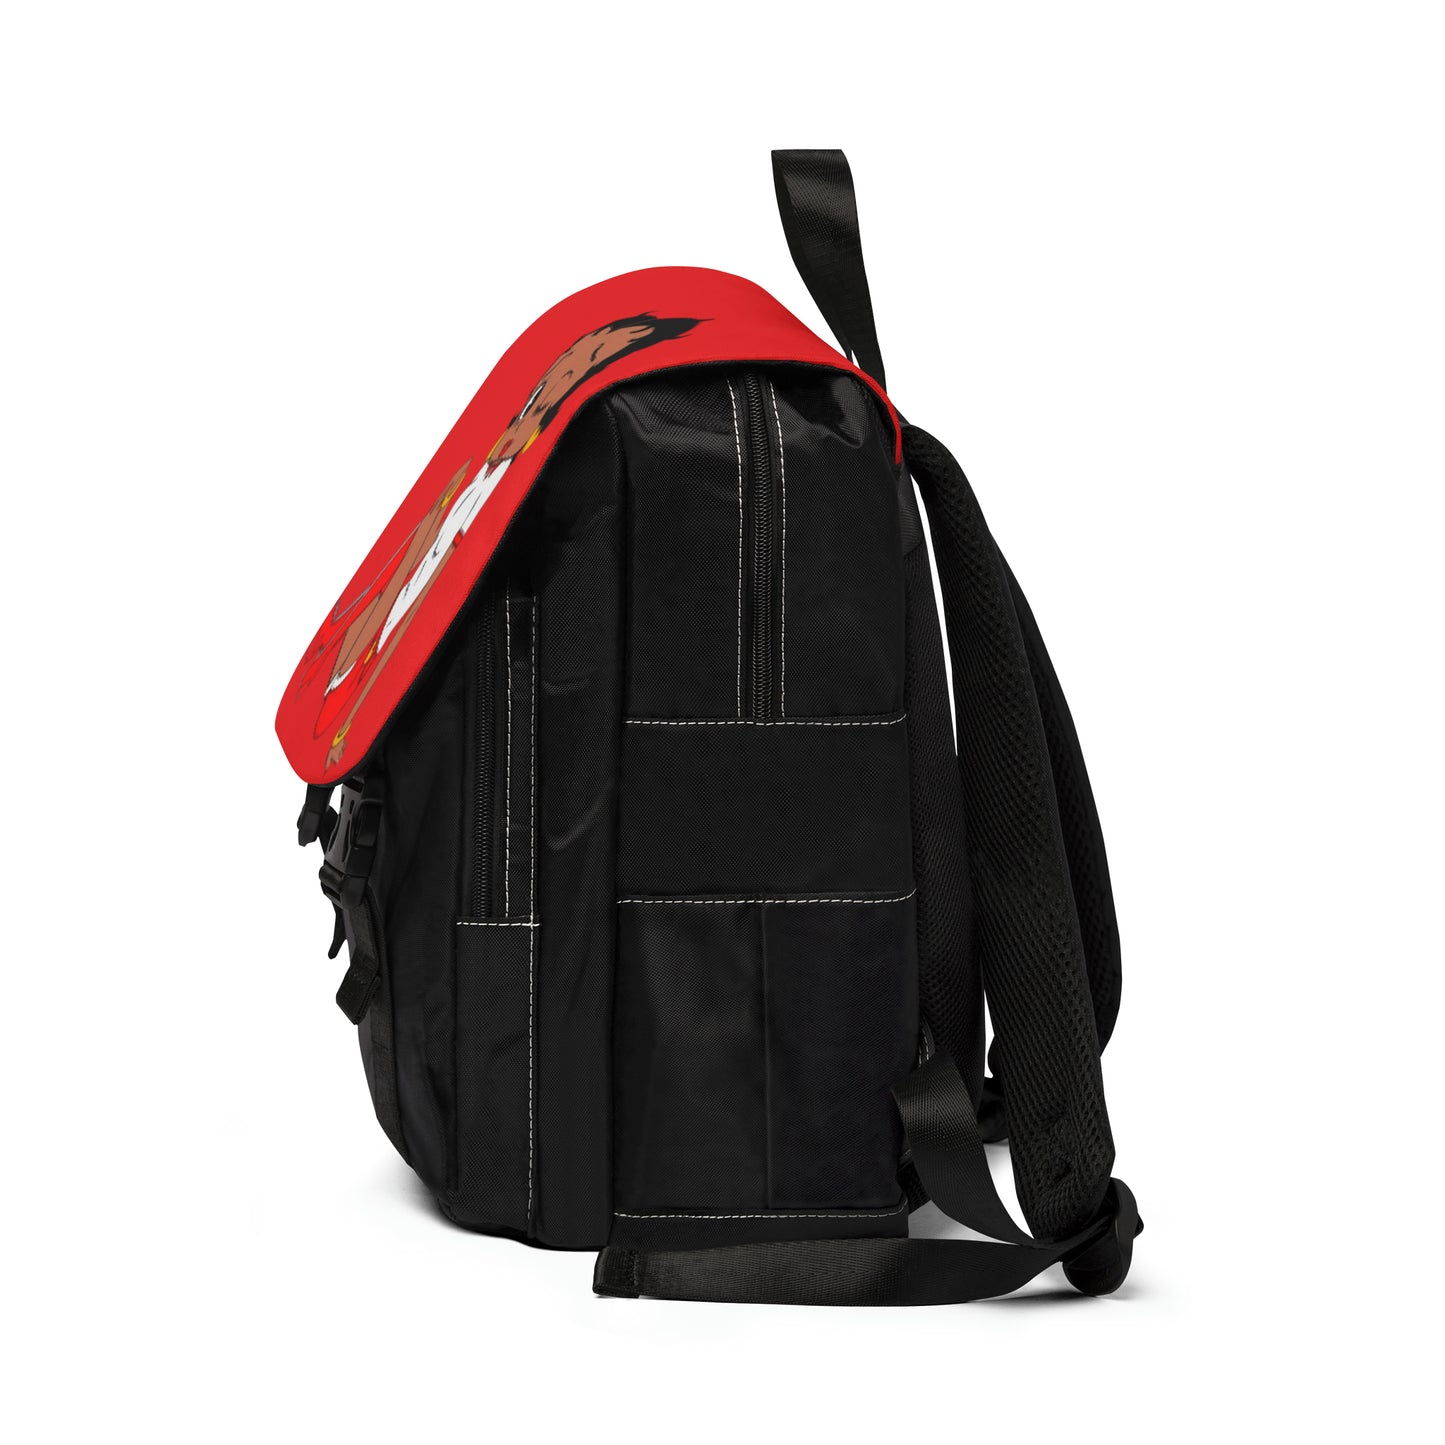 R&RH Unisex Casual Shoulder Backpack